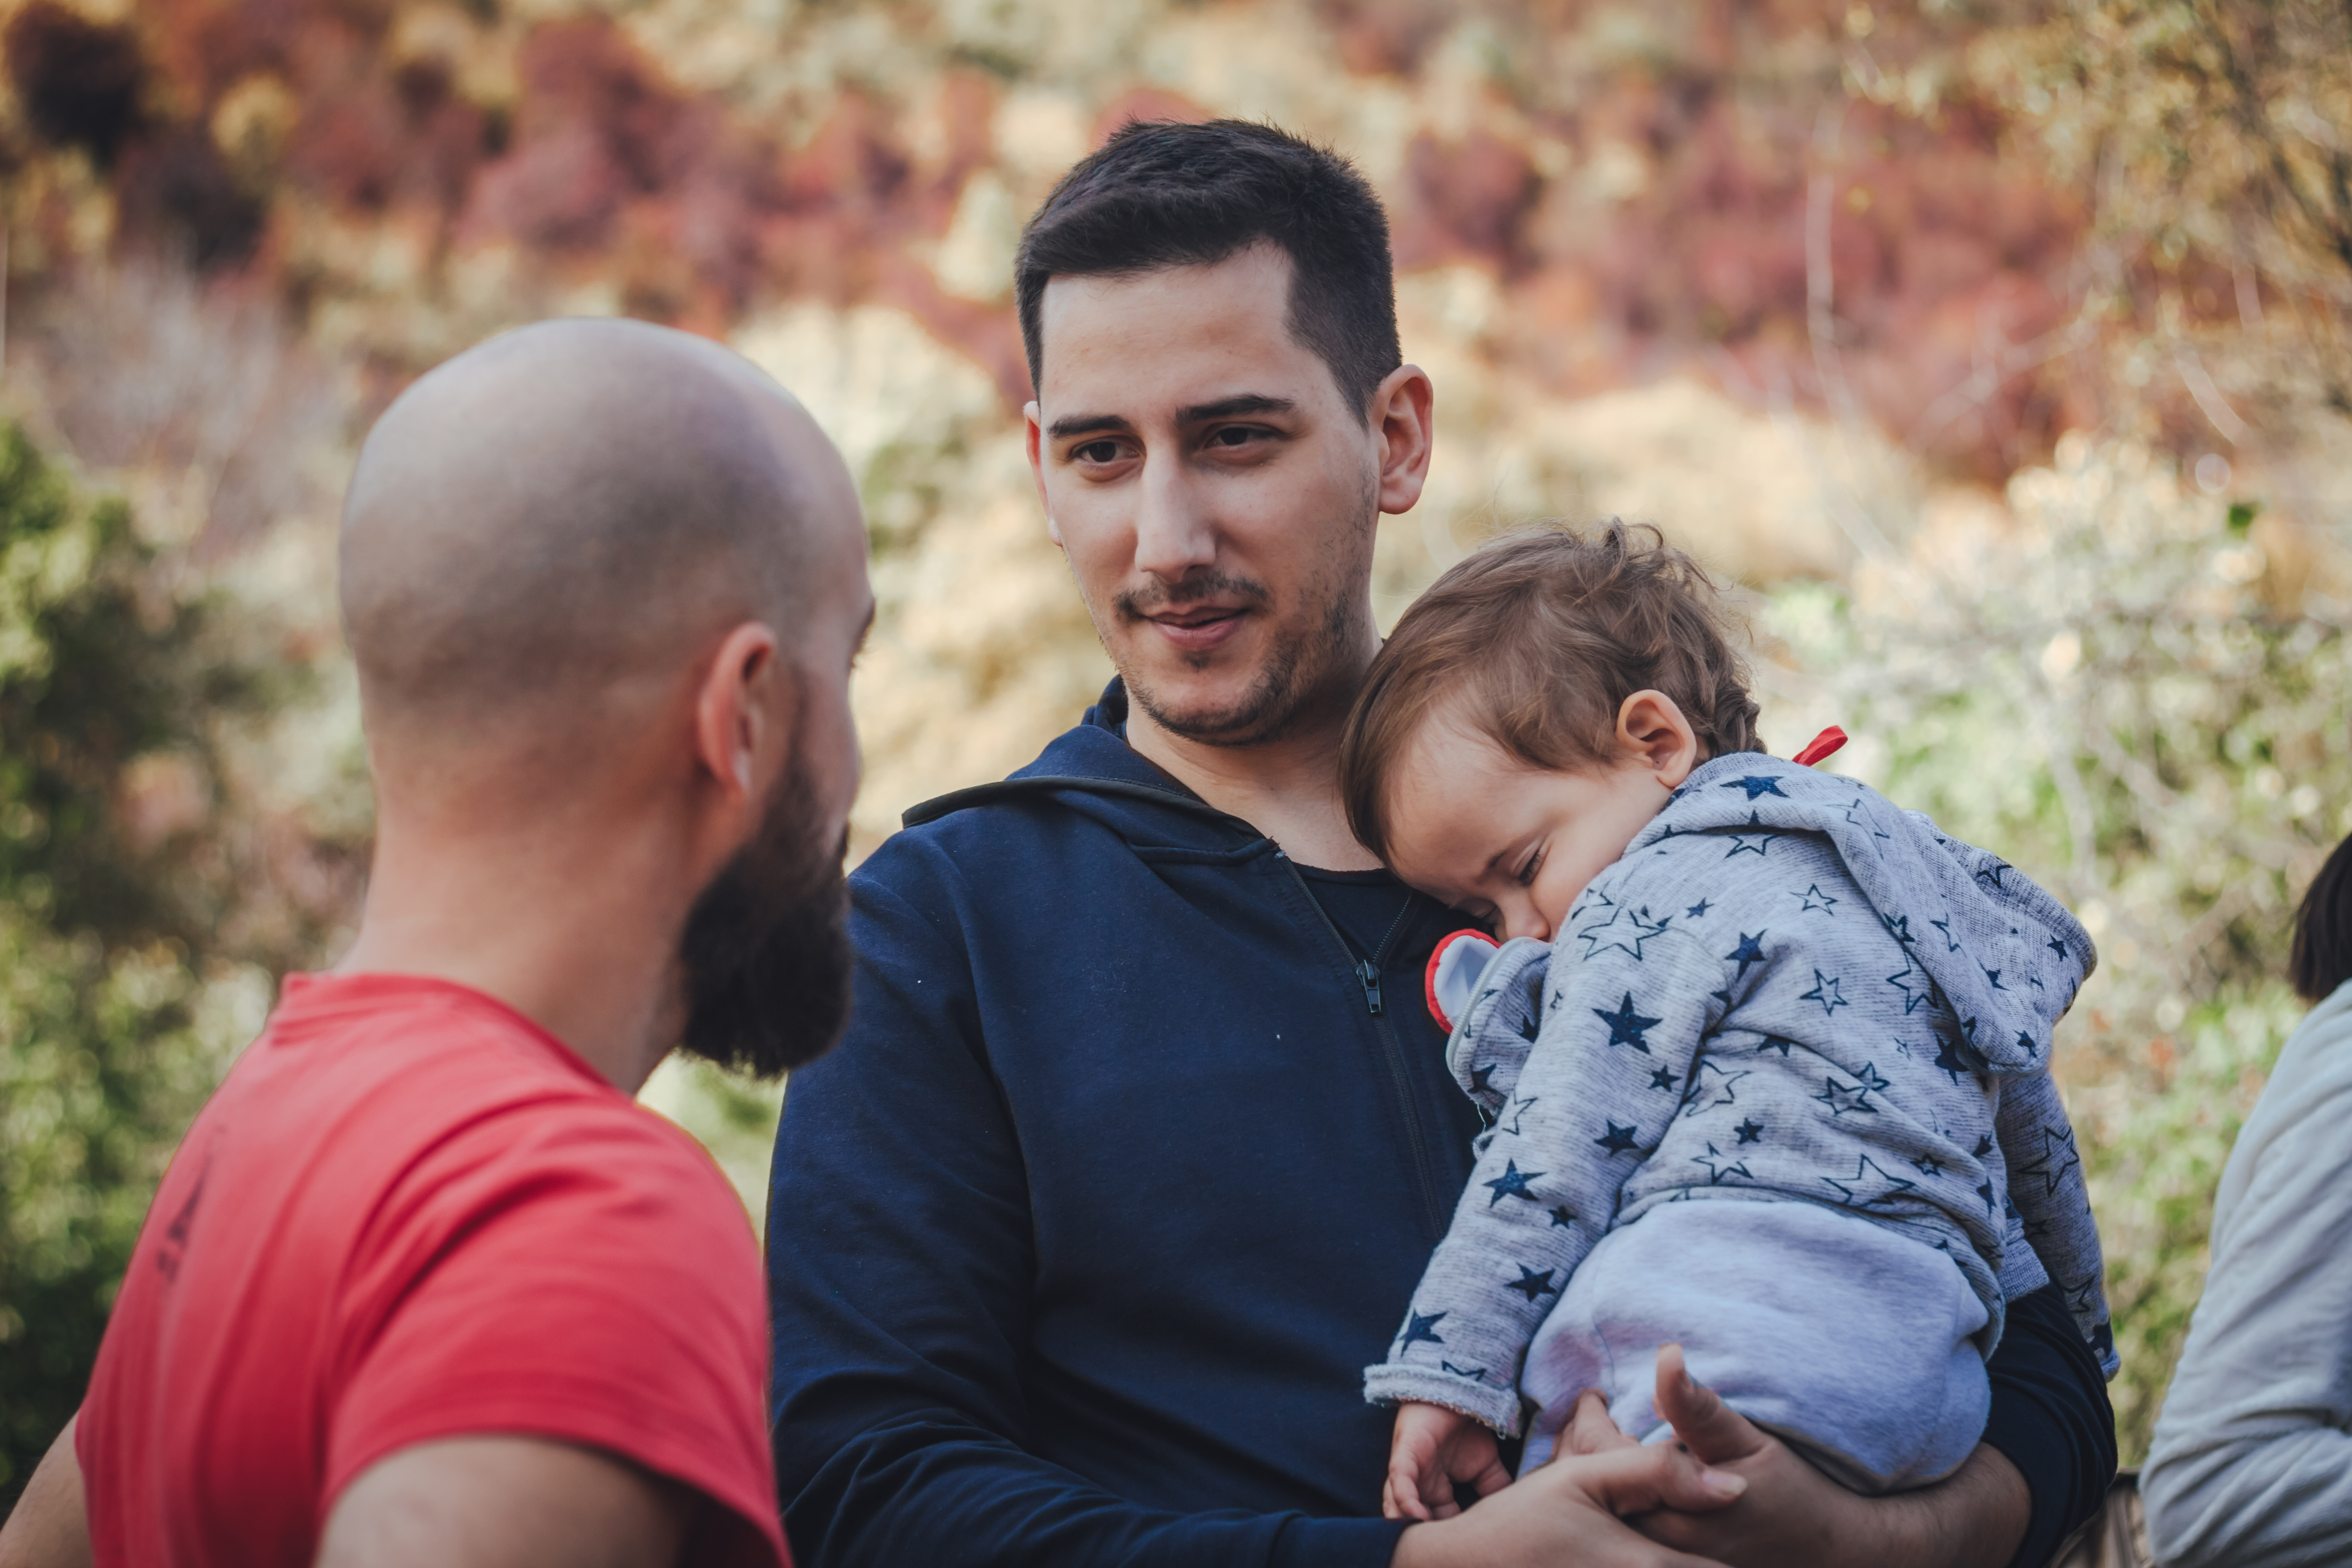 Zwei Männer unterhalten sich und einer von ihnen hält ein Baby | Quelle: Shutterstock